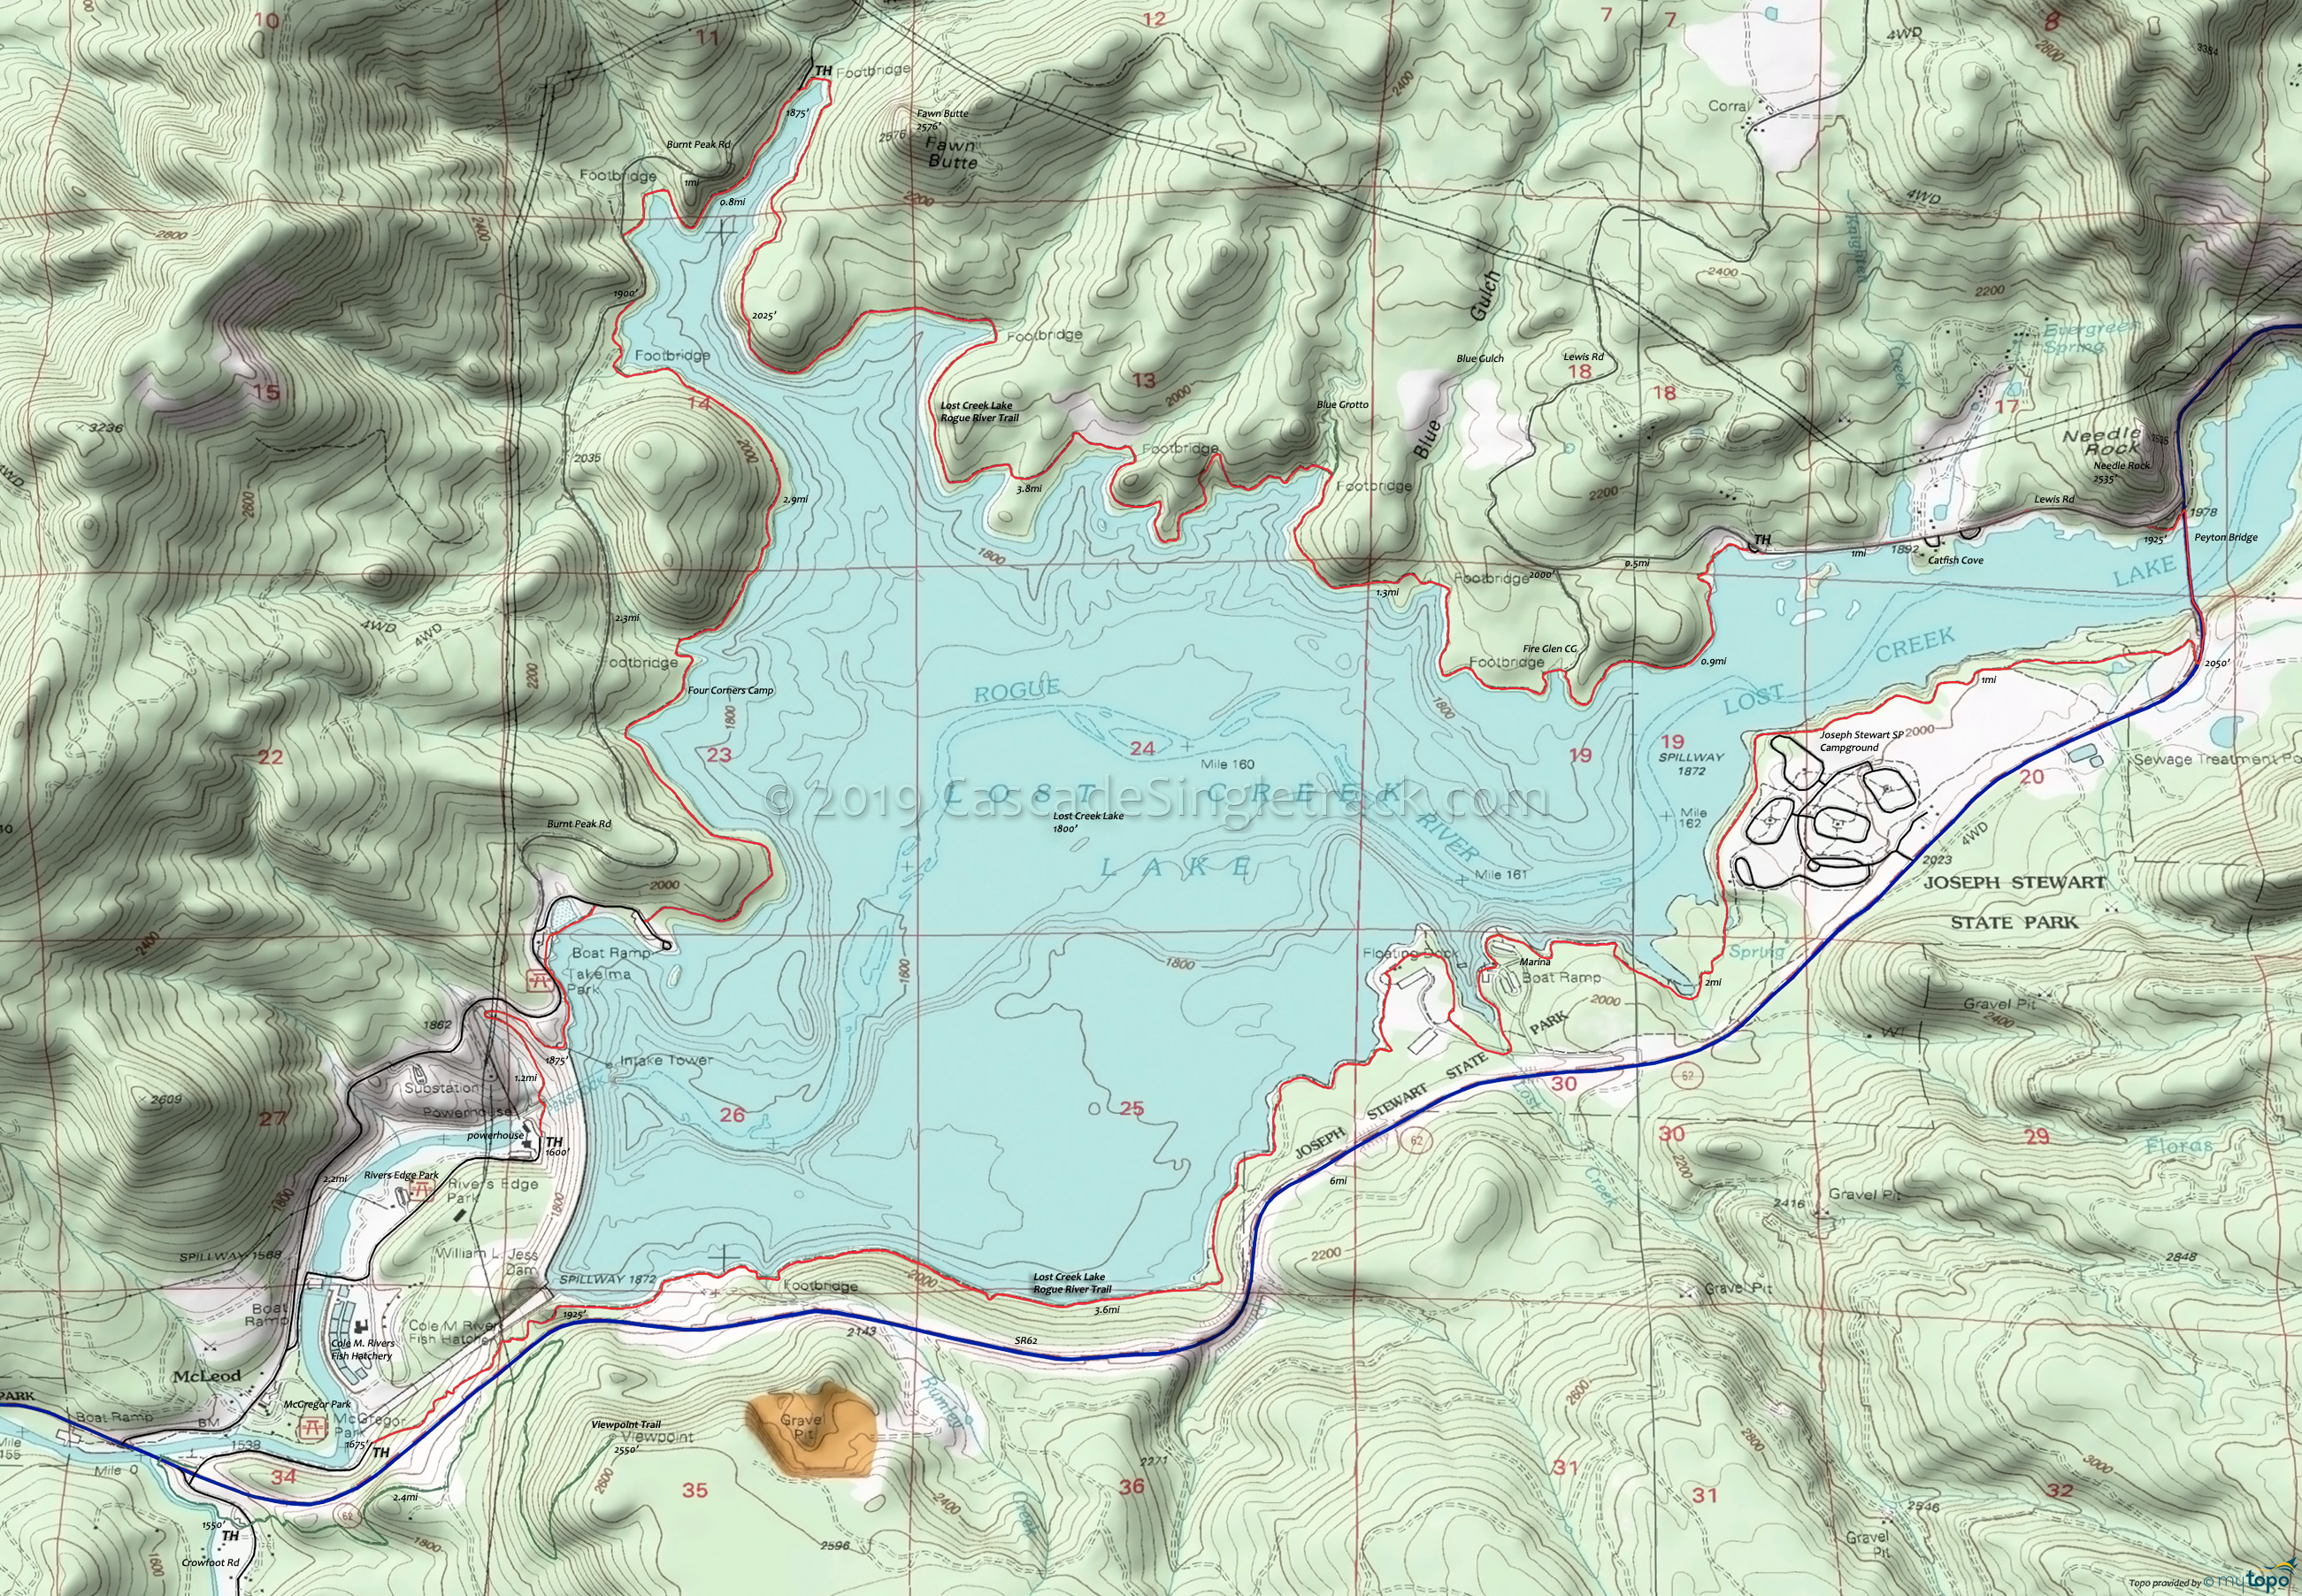 Lost Creek Lake Area Topo Map